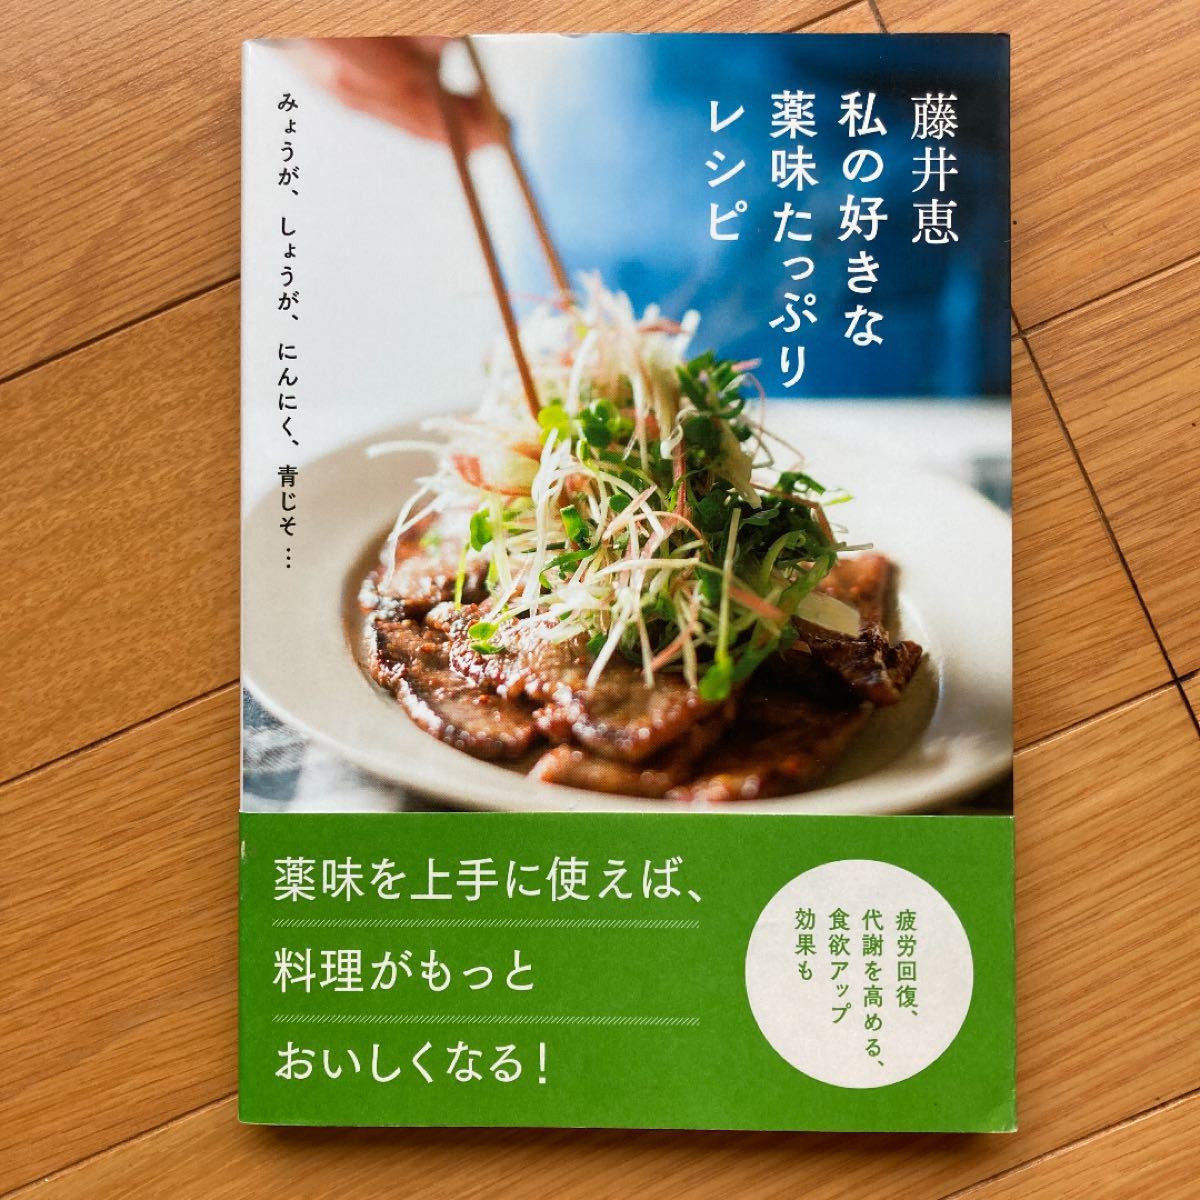 藤井恵 私の好きな薬味たっぷりレシピ & 体にいいごはん献立 2冊セット